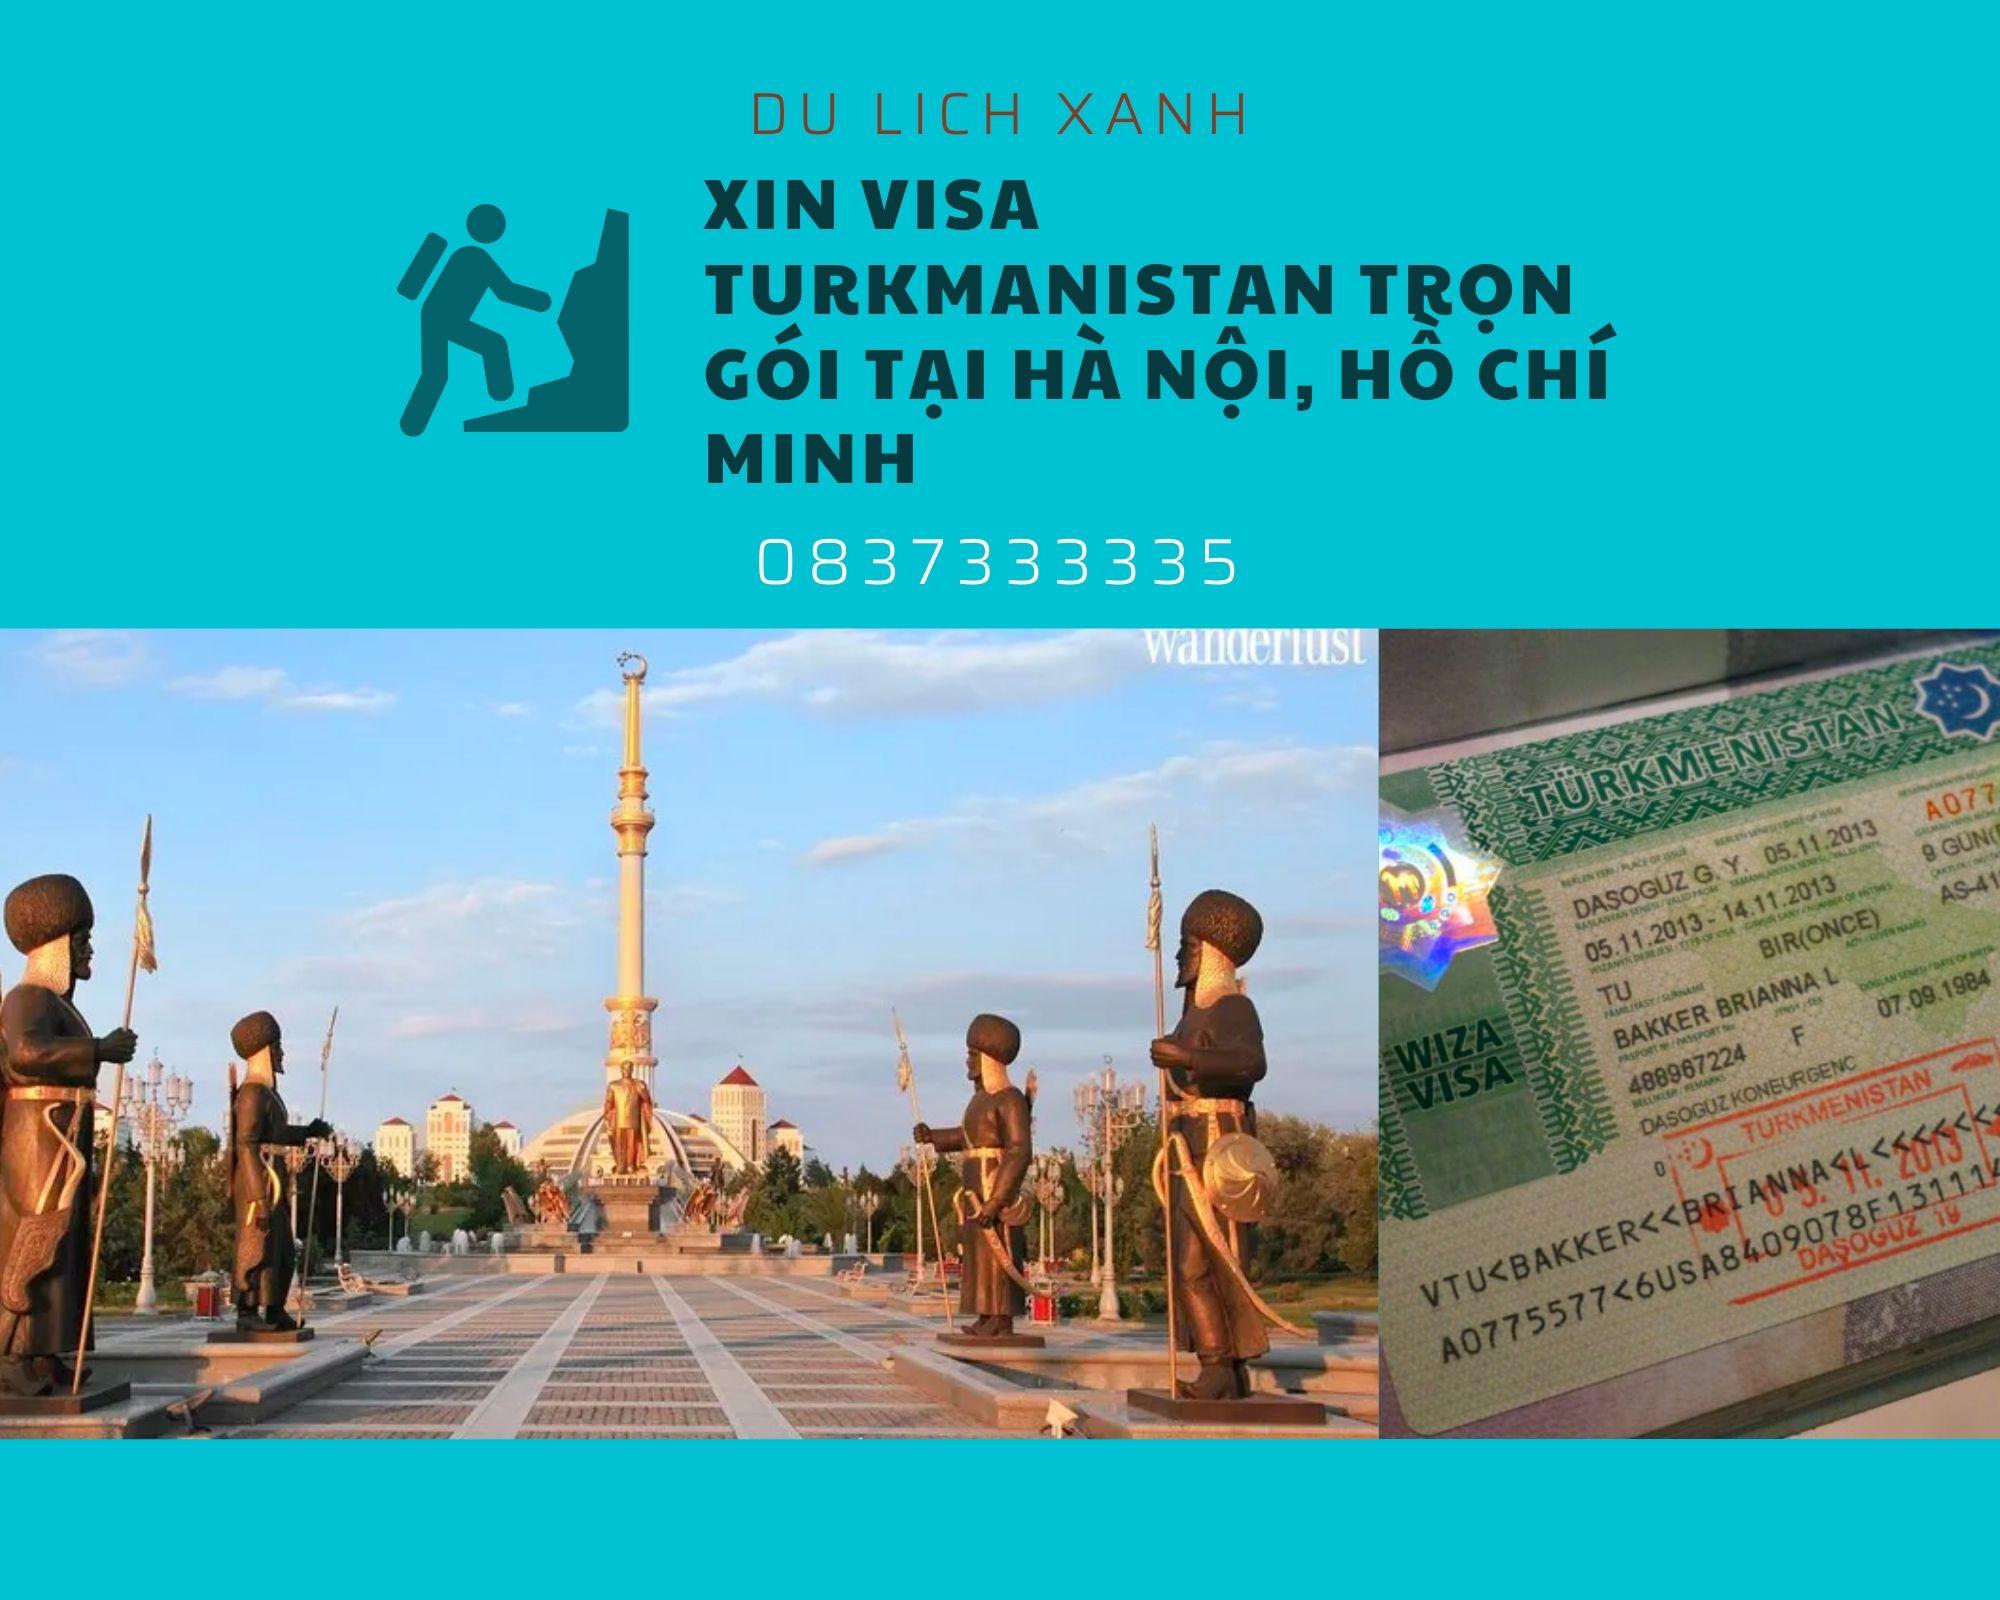 Xin Visa Turkmanistan trọn gói tại Hà Nội, Hồ Chí Minh